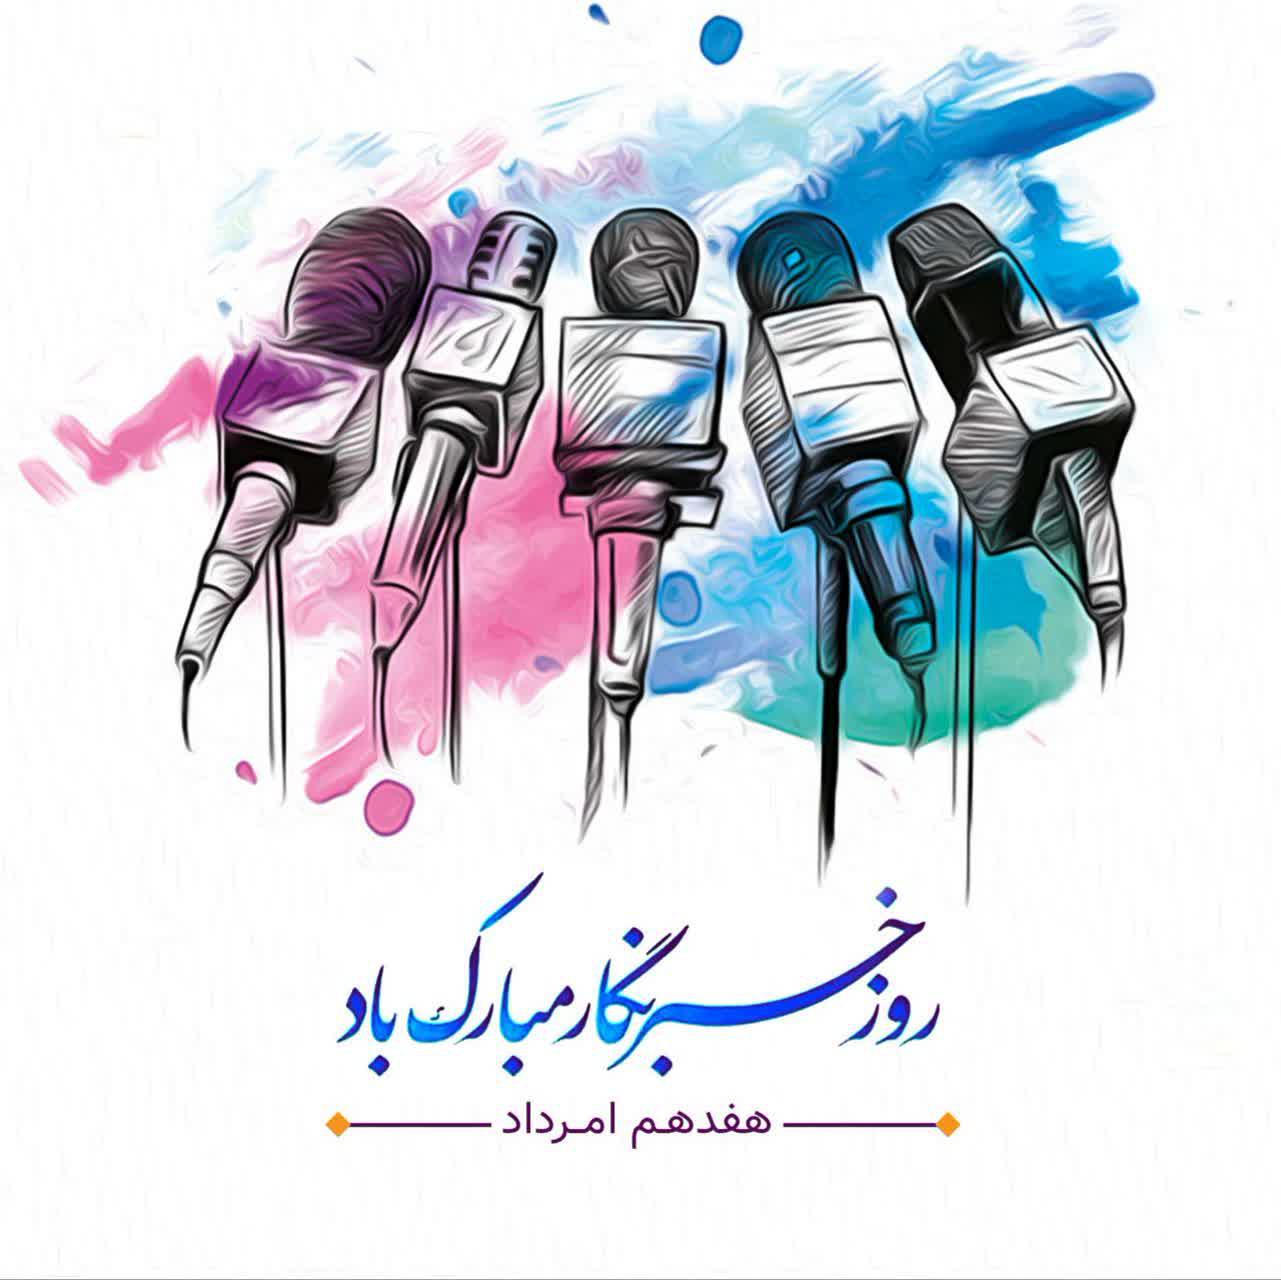 پیام تبریک رئیس اداره تبلیغات اسلامی مبارکه بمناسبت روز خبرنگار